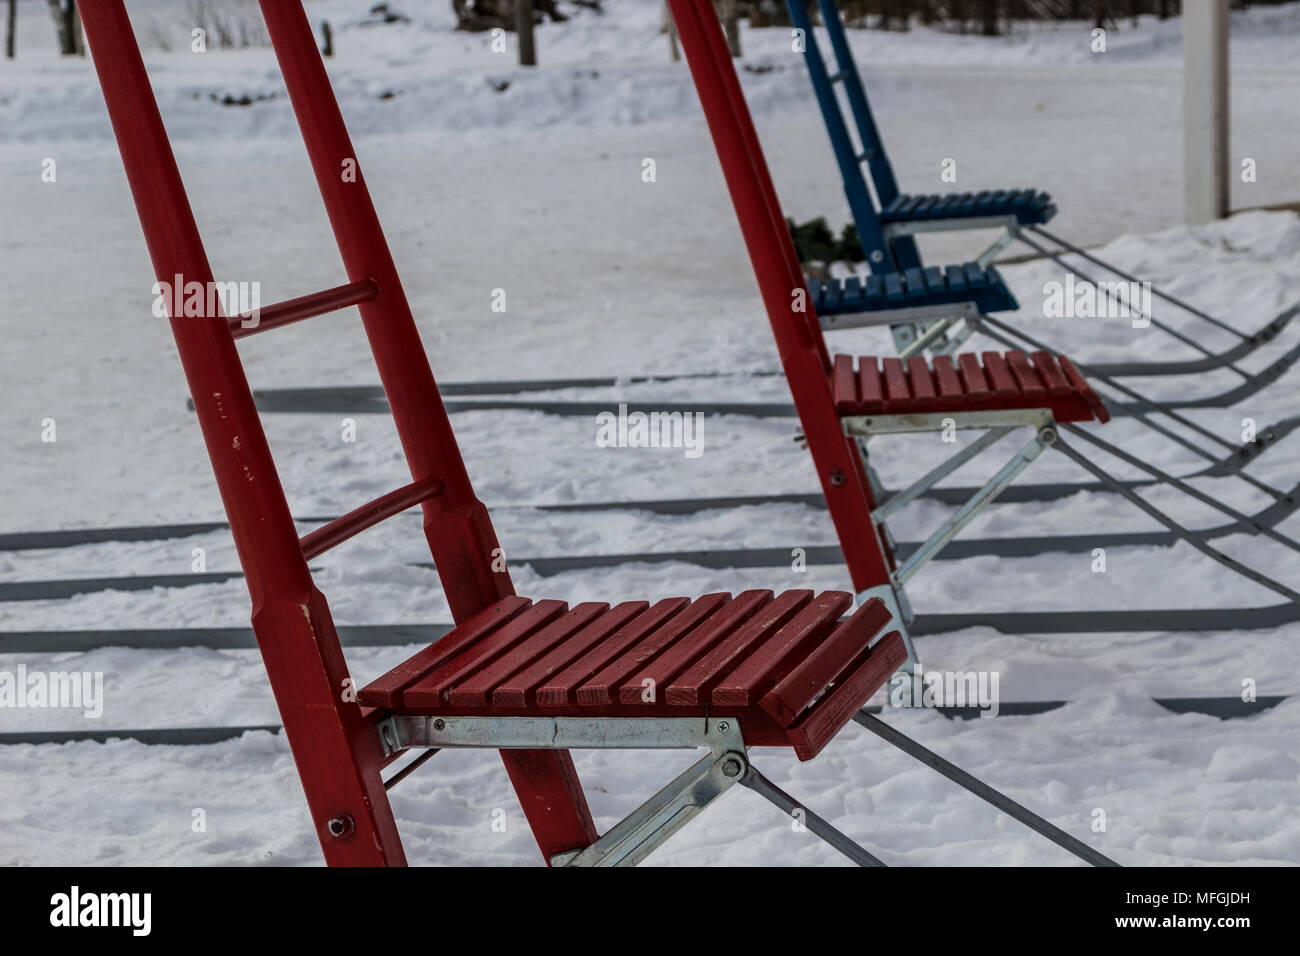 Finnische Schlitten im Winter Stockfotografie - Alamy